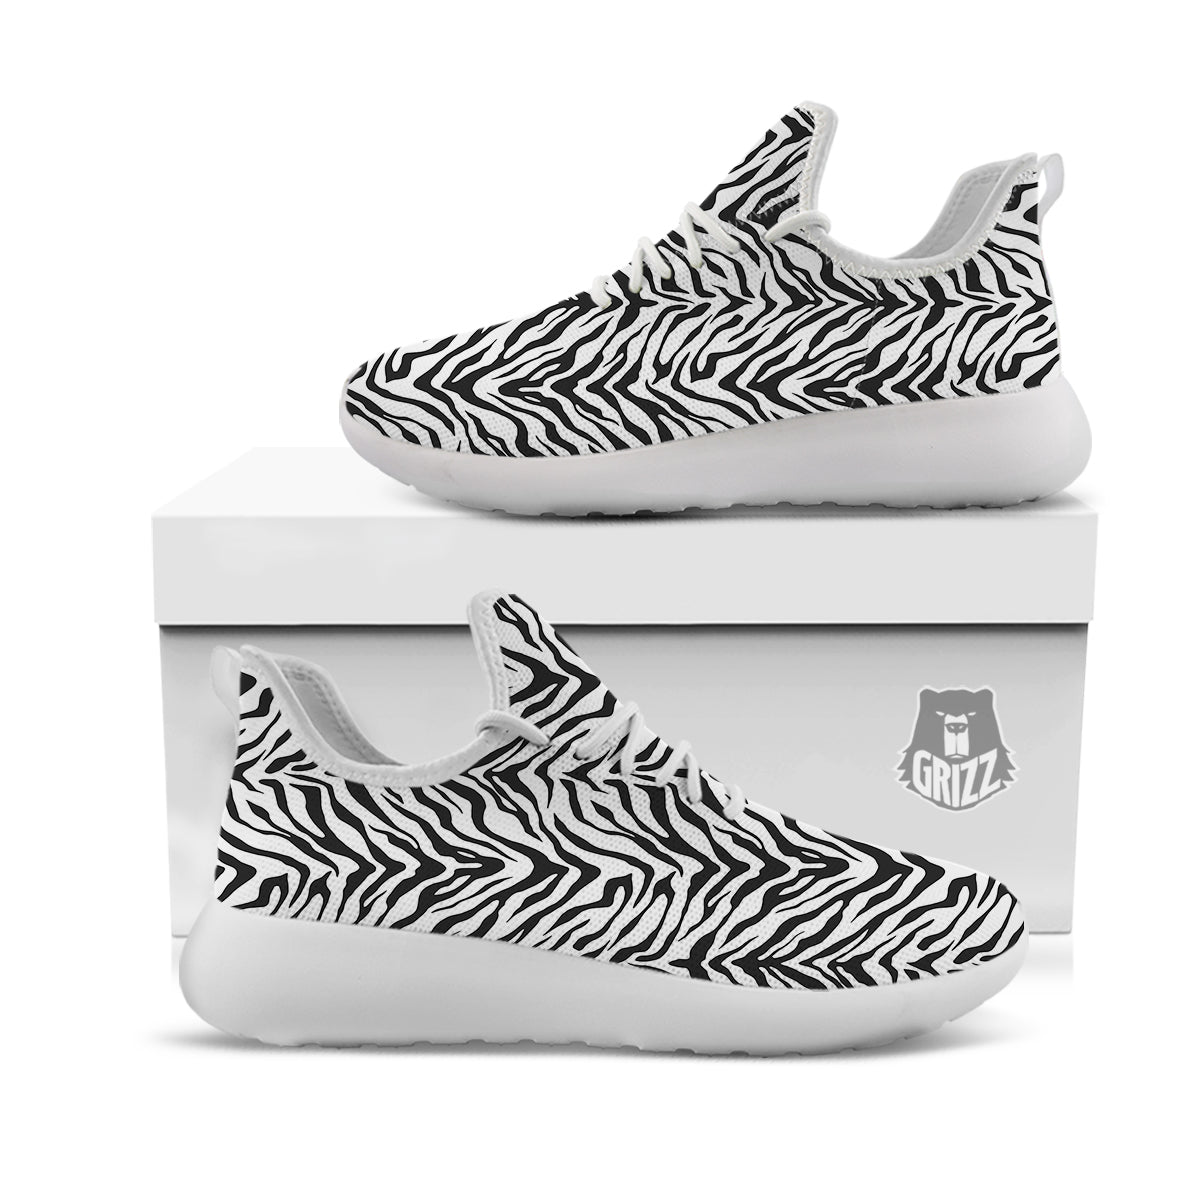 Stripe White Tiger Print Pattern White Athletic Shoes-grizzshop